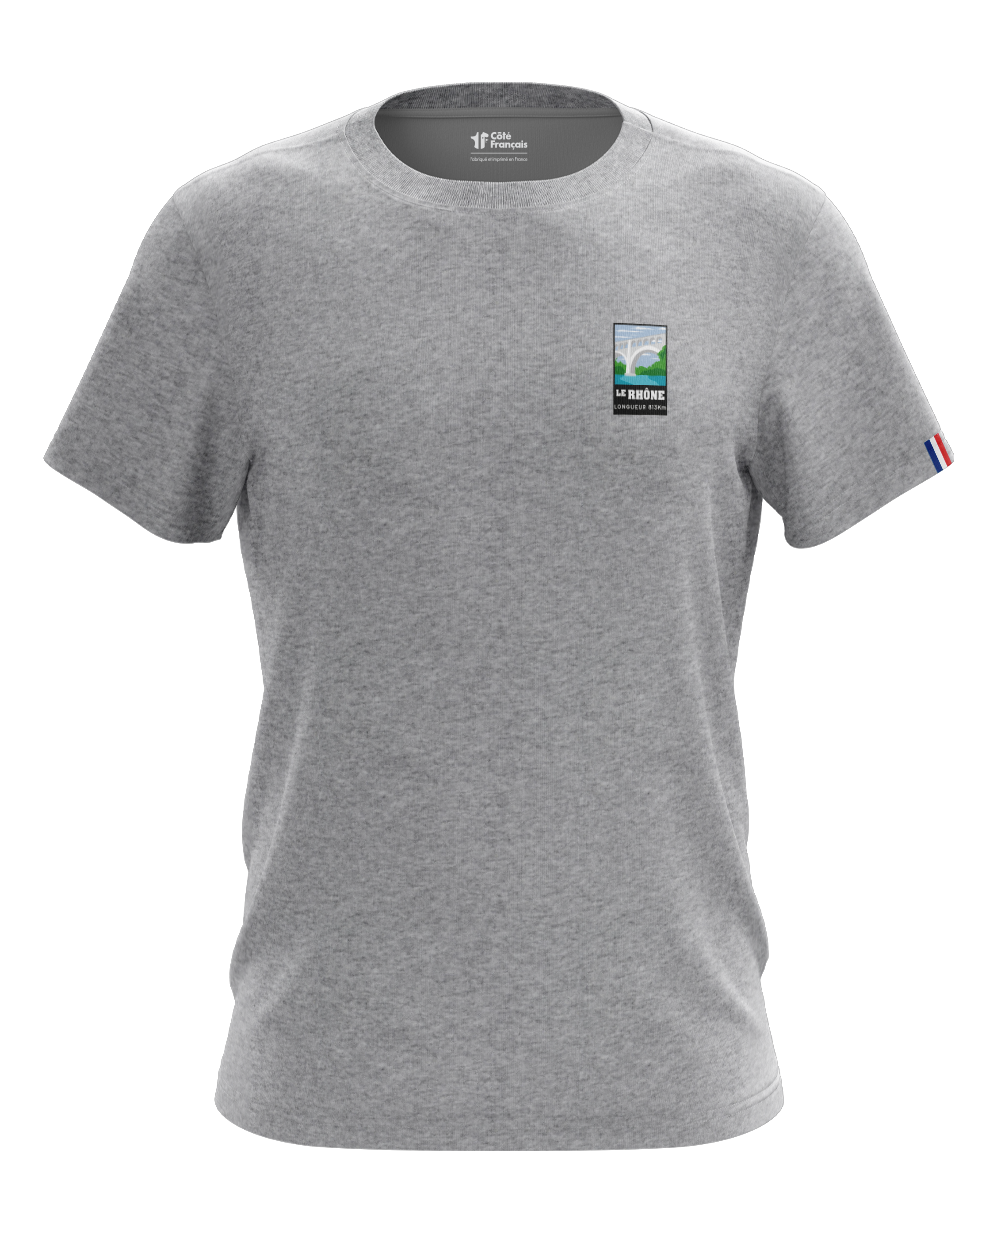 T-Shirt "Fleuve du Rhône" - gris chiné